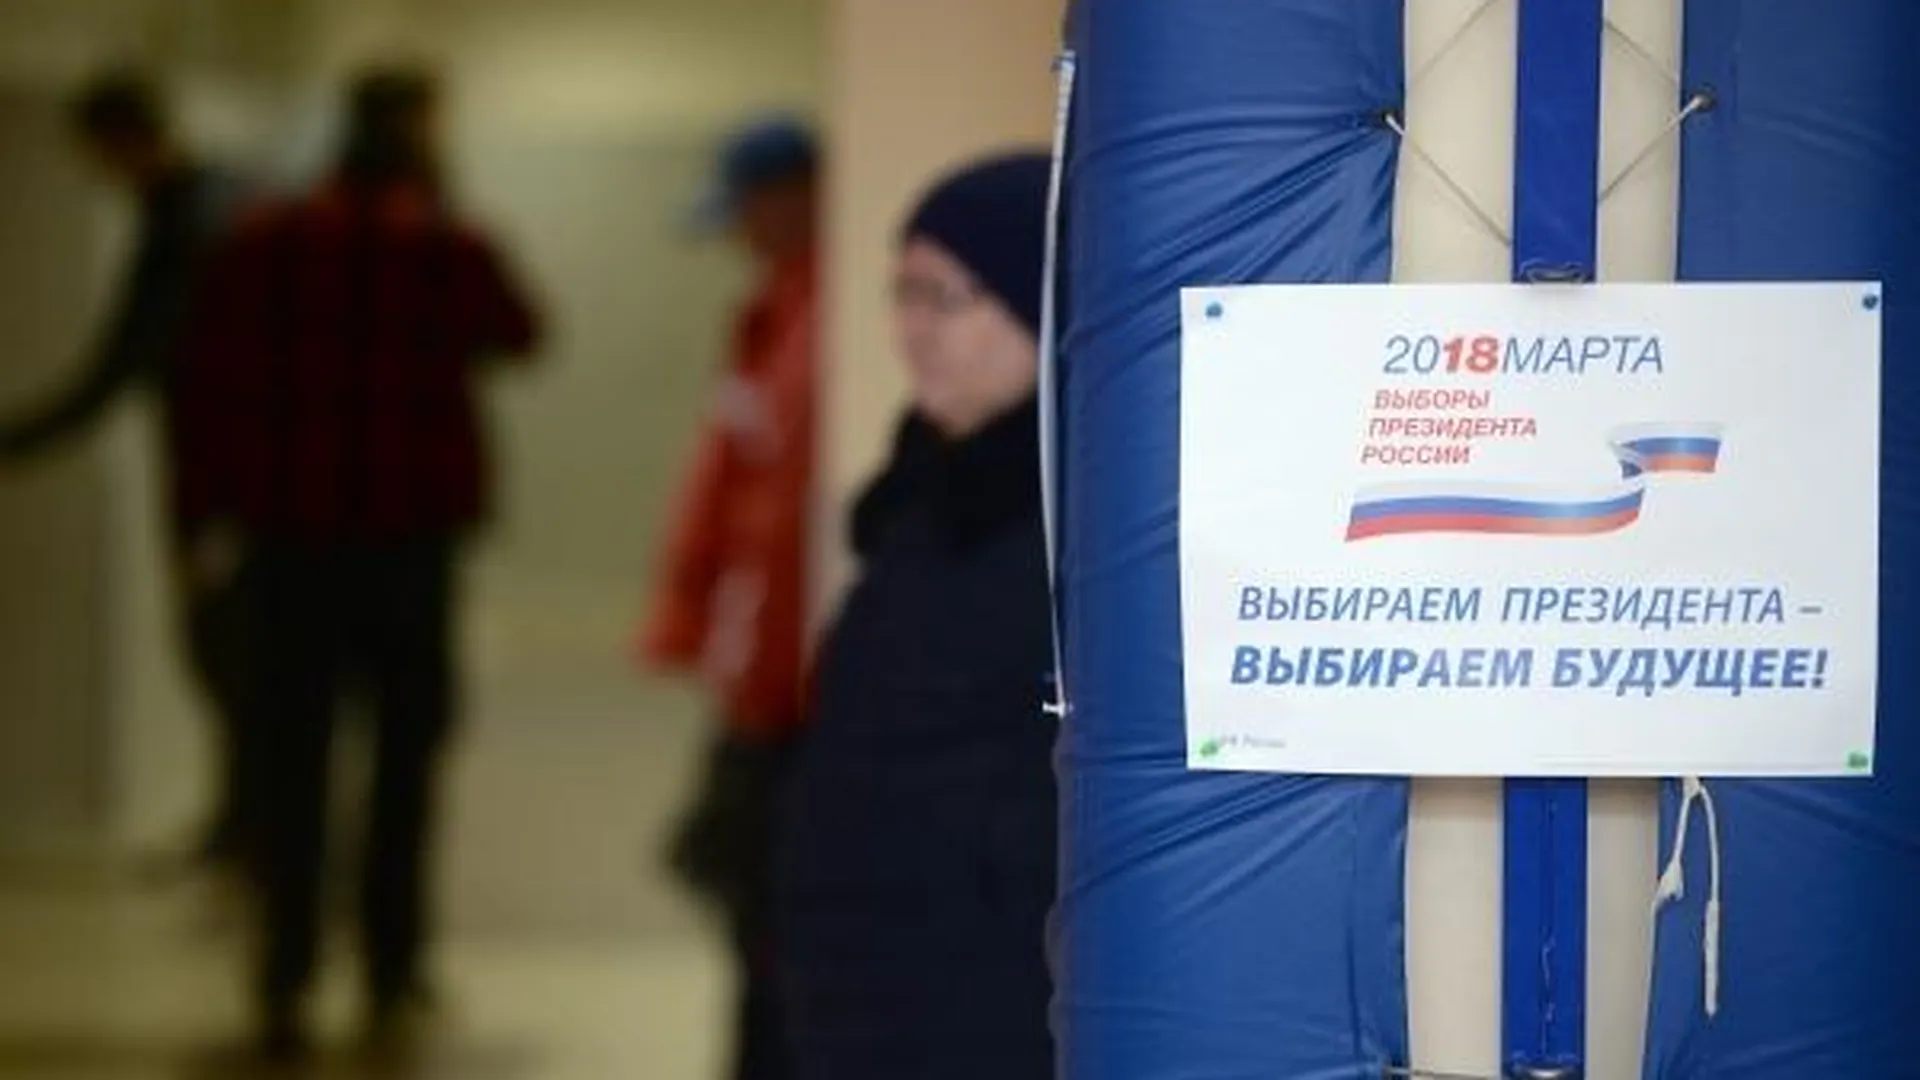 Явка на выборах в Подмосковье на 10:00 составила 8%